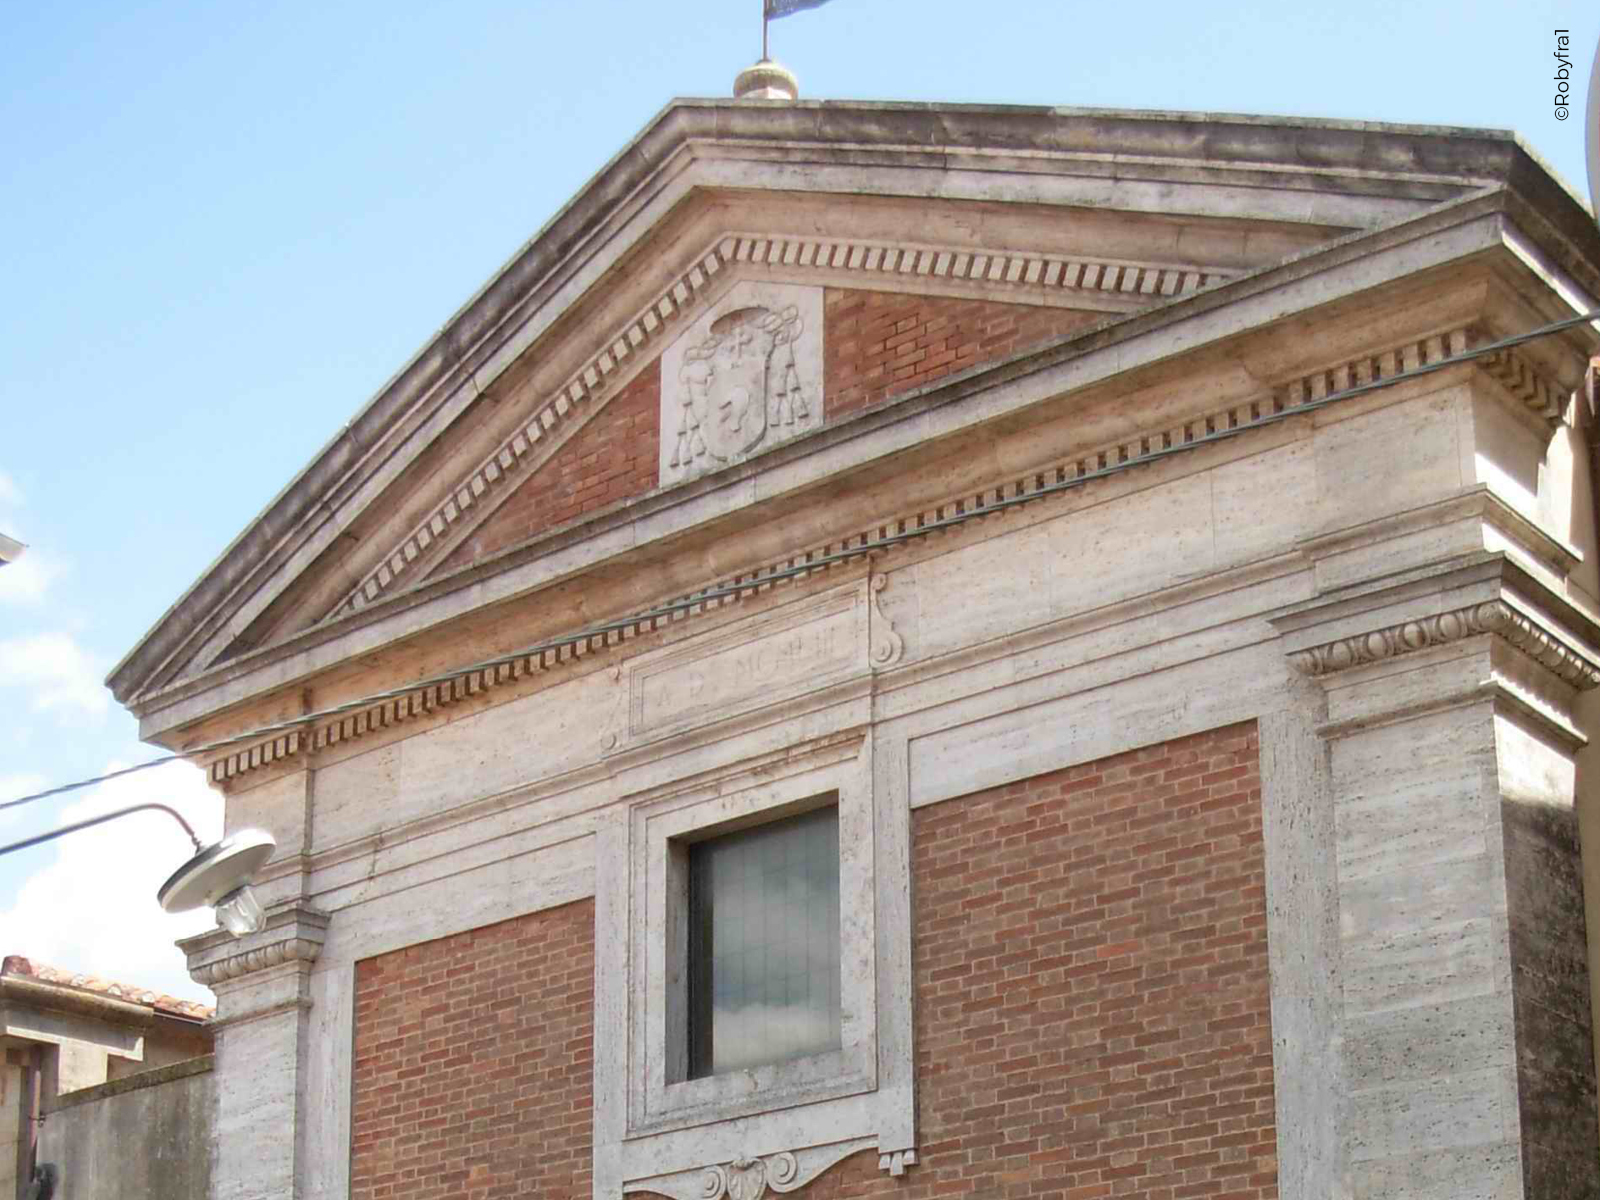 The facade of the Church of St. Niccolò